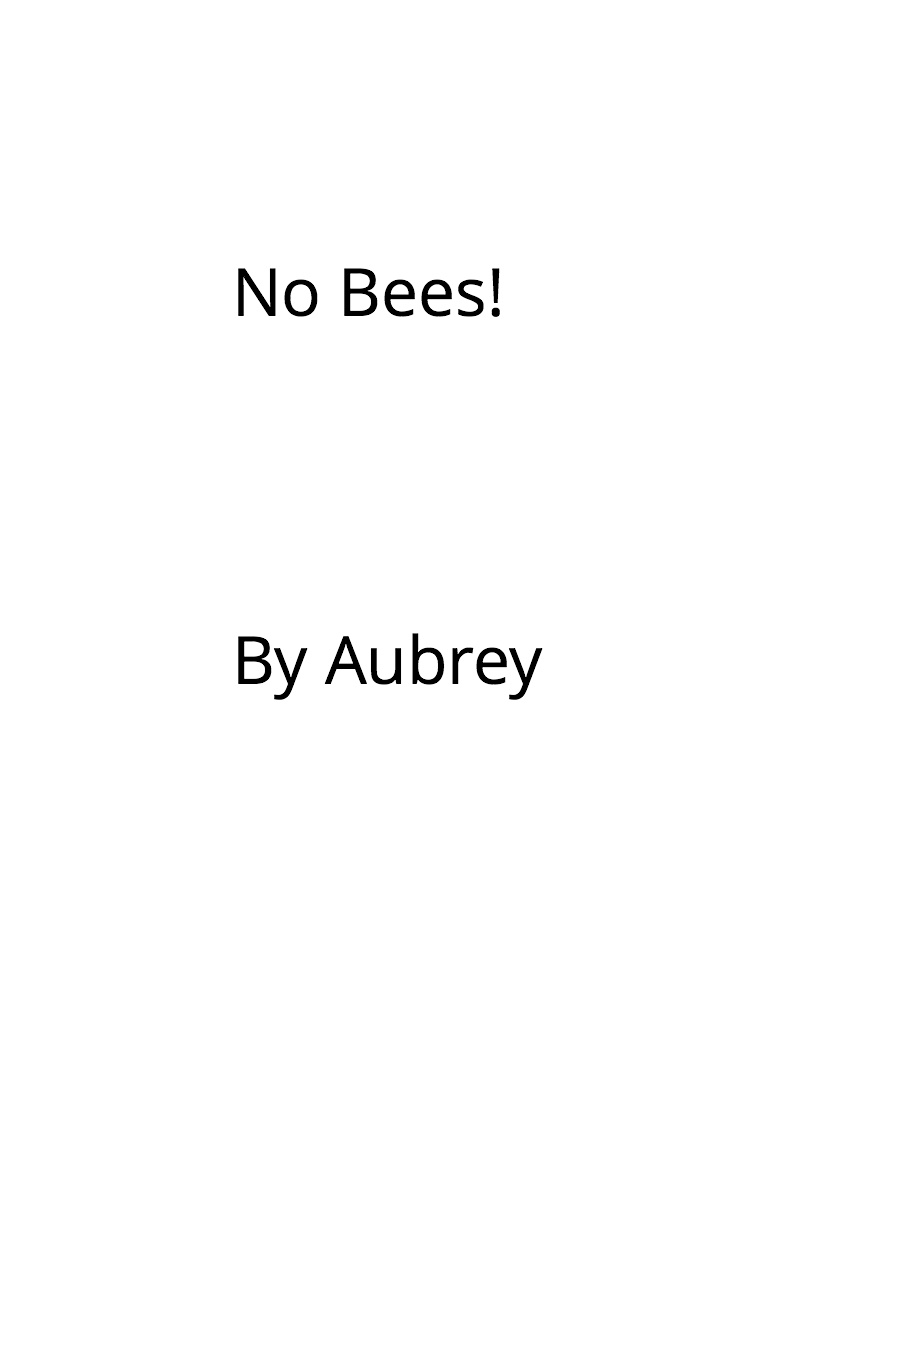 No Bees by Aubrey I